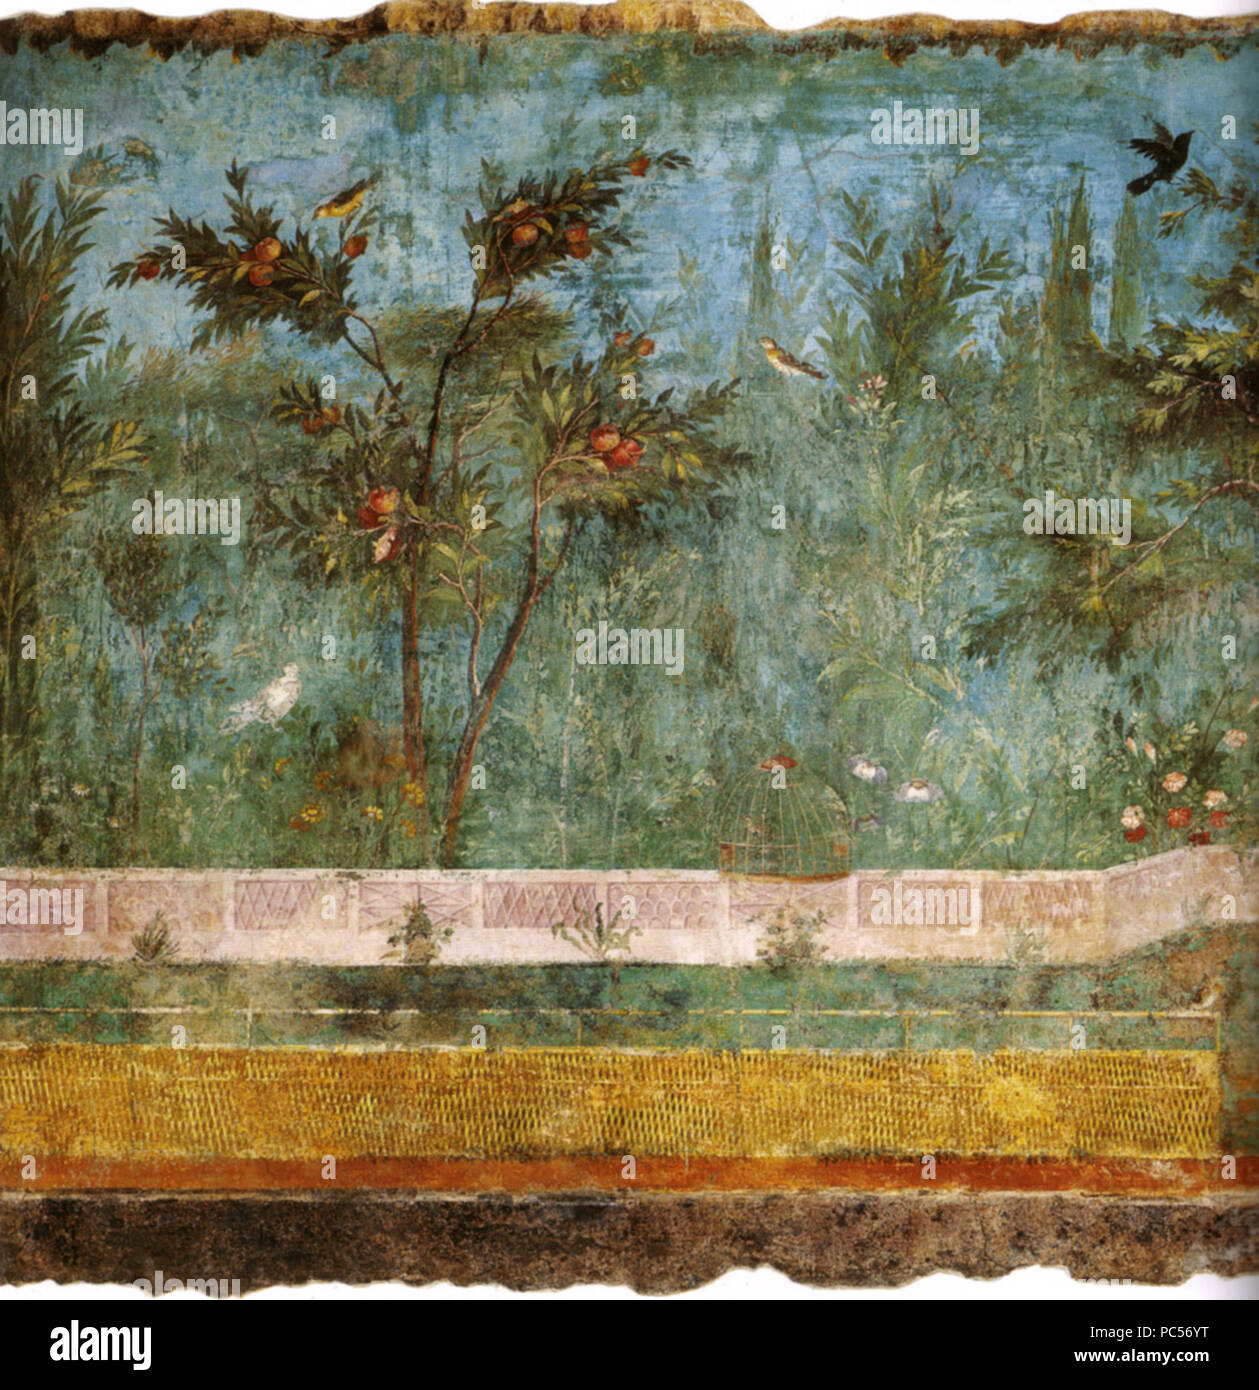 633 Villa di livia, affreschi di giardino, parete corta meridionale 01 Stock Photo